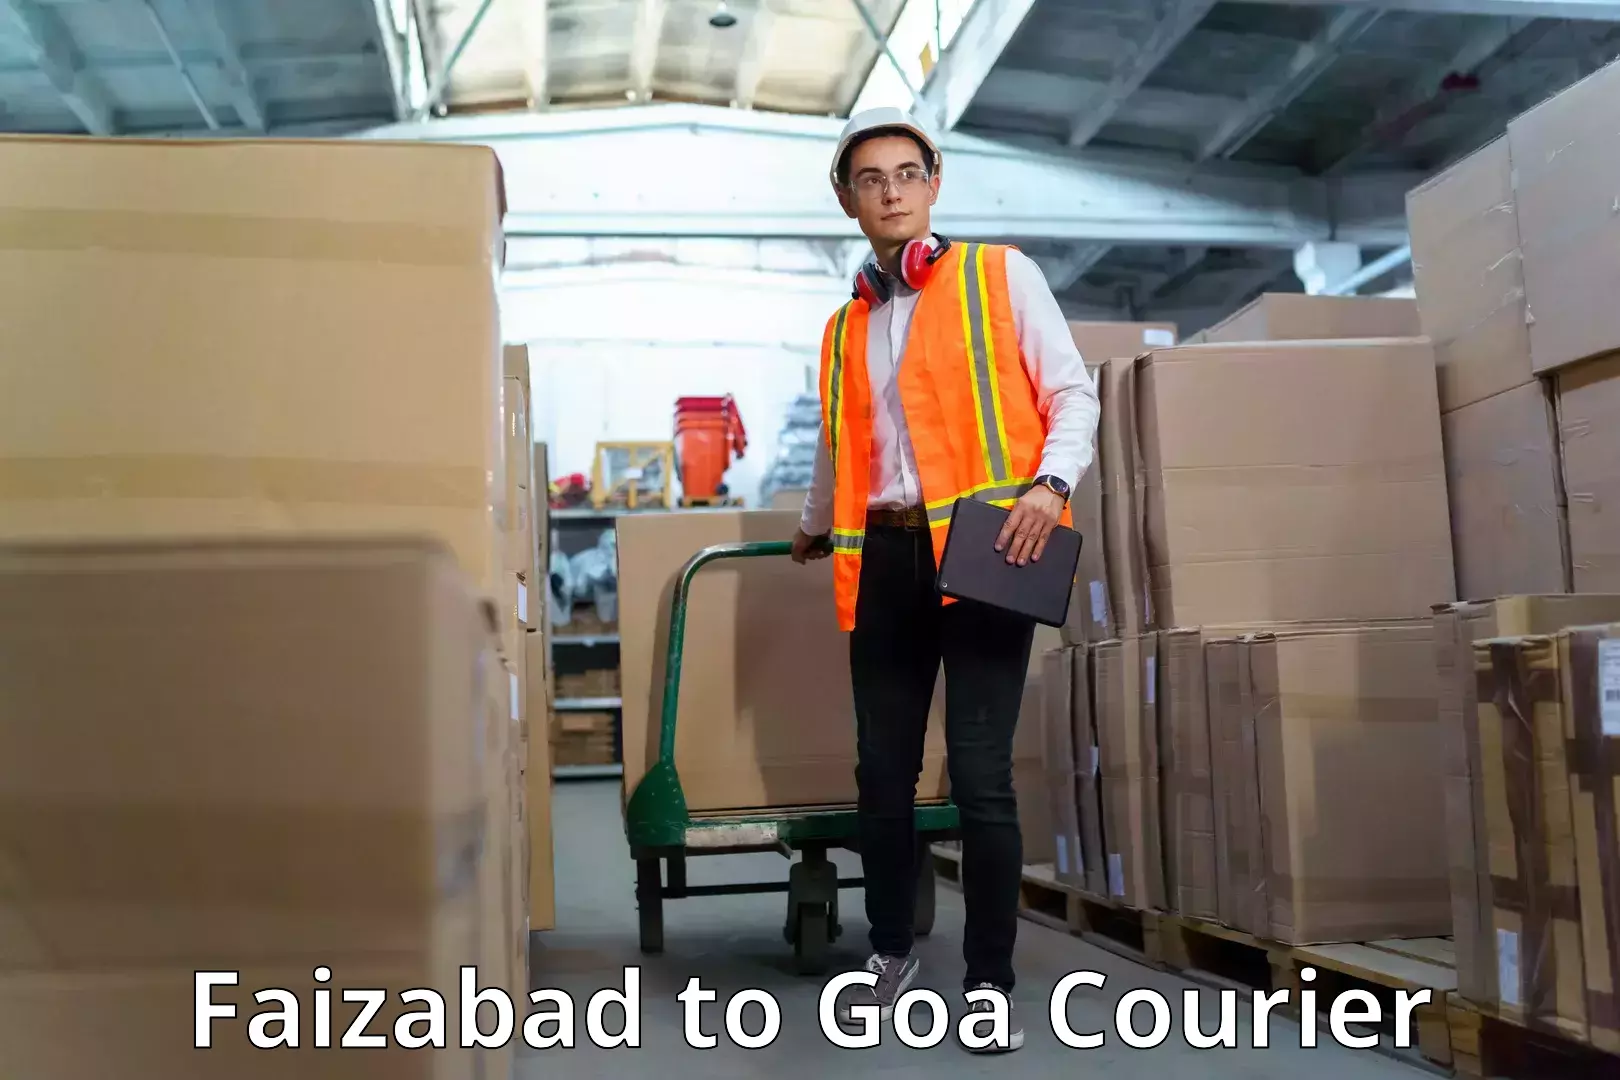 Courier service booking Faizabad to Panjim